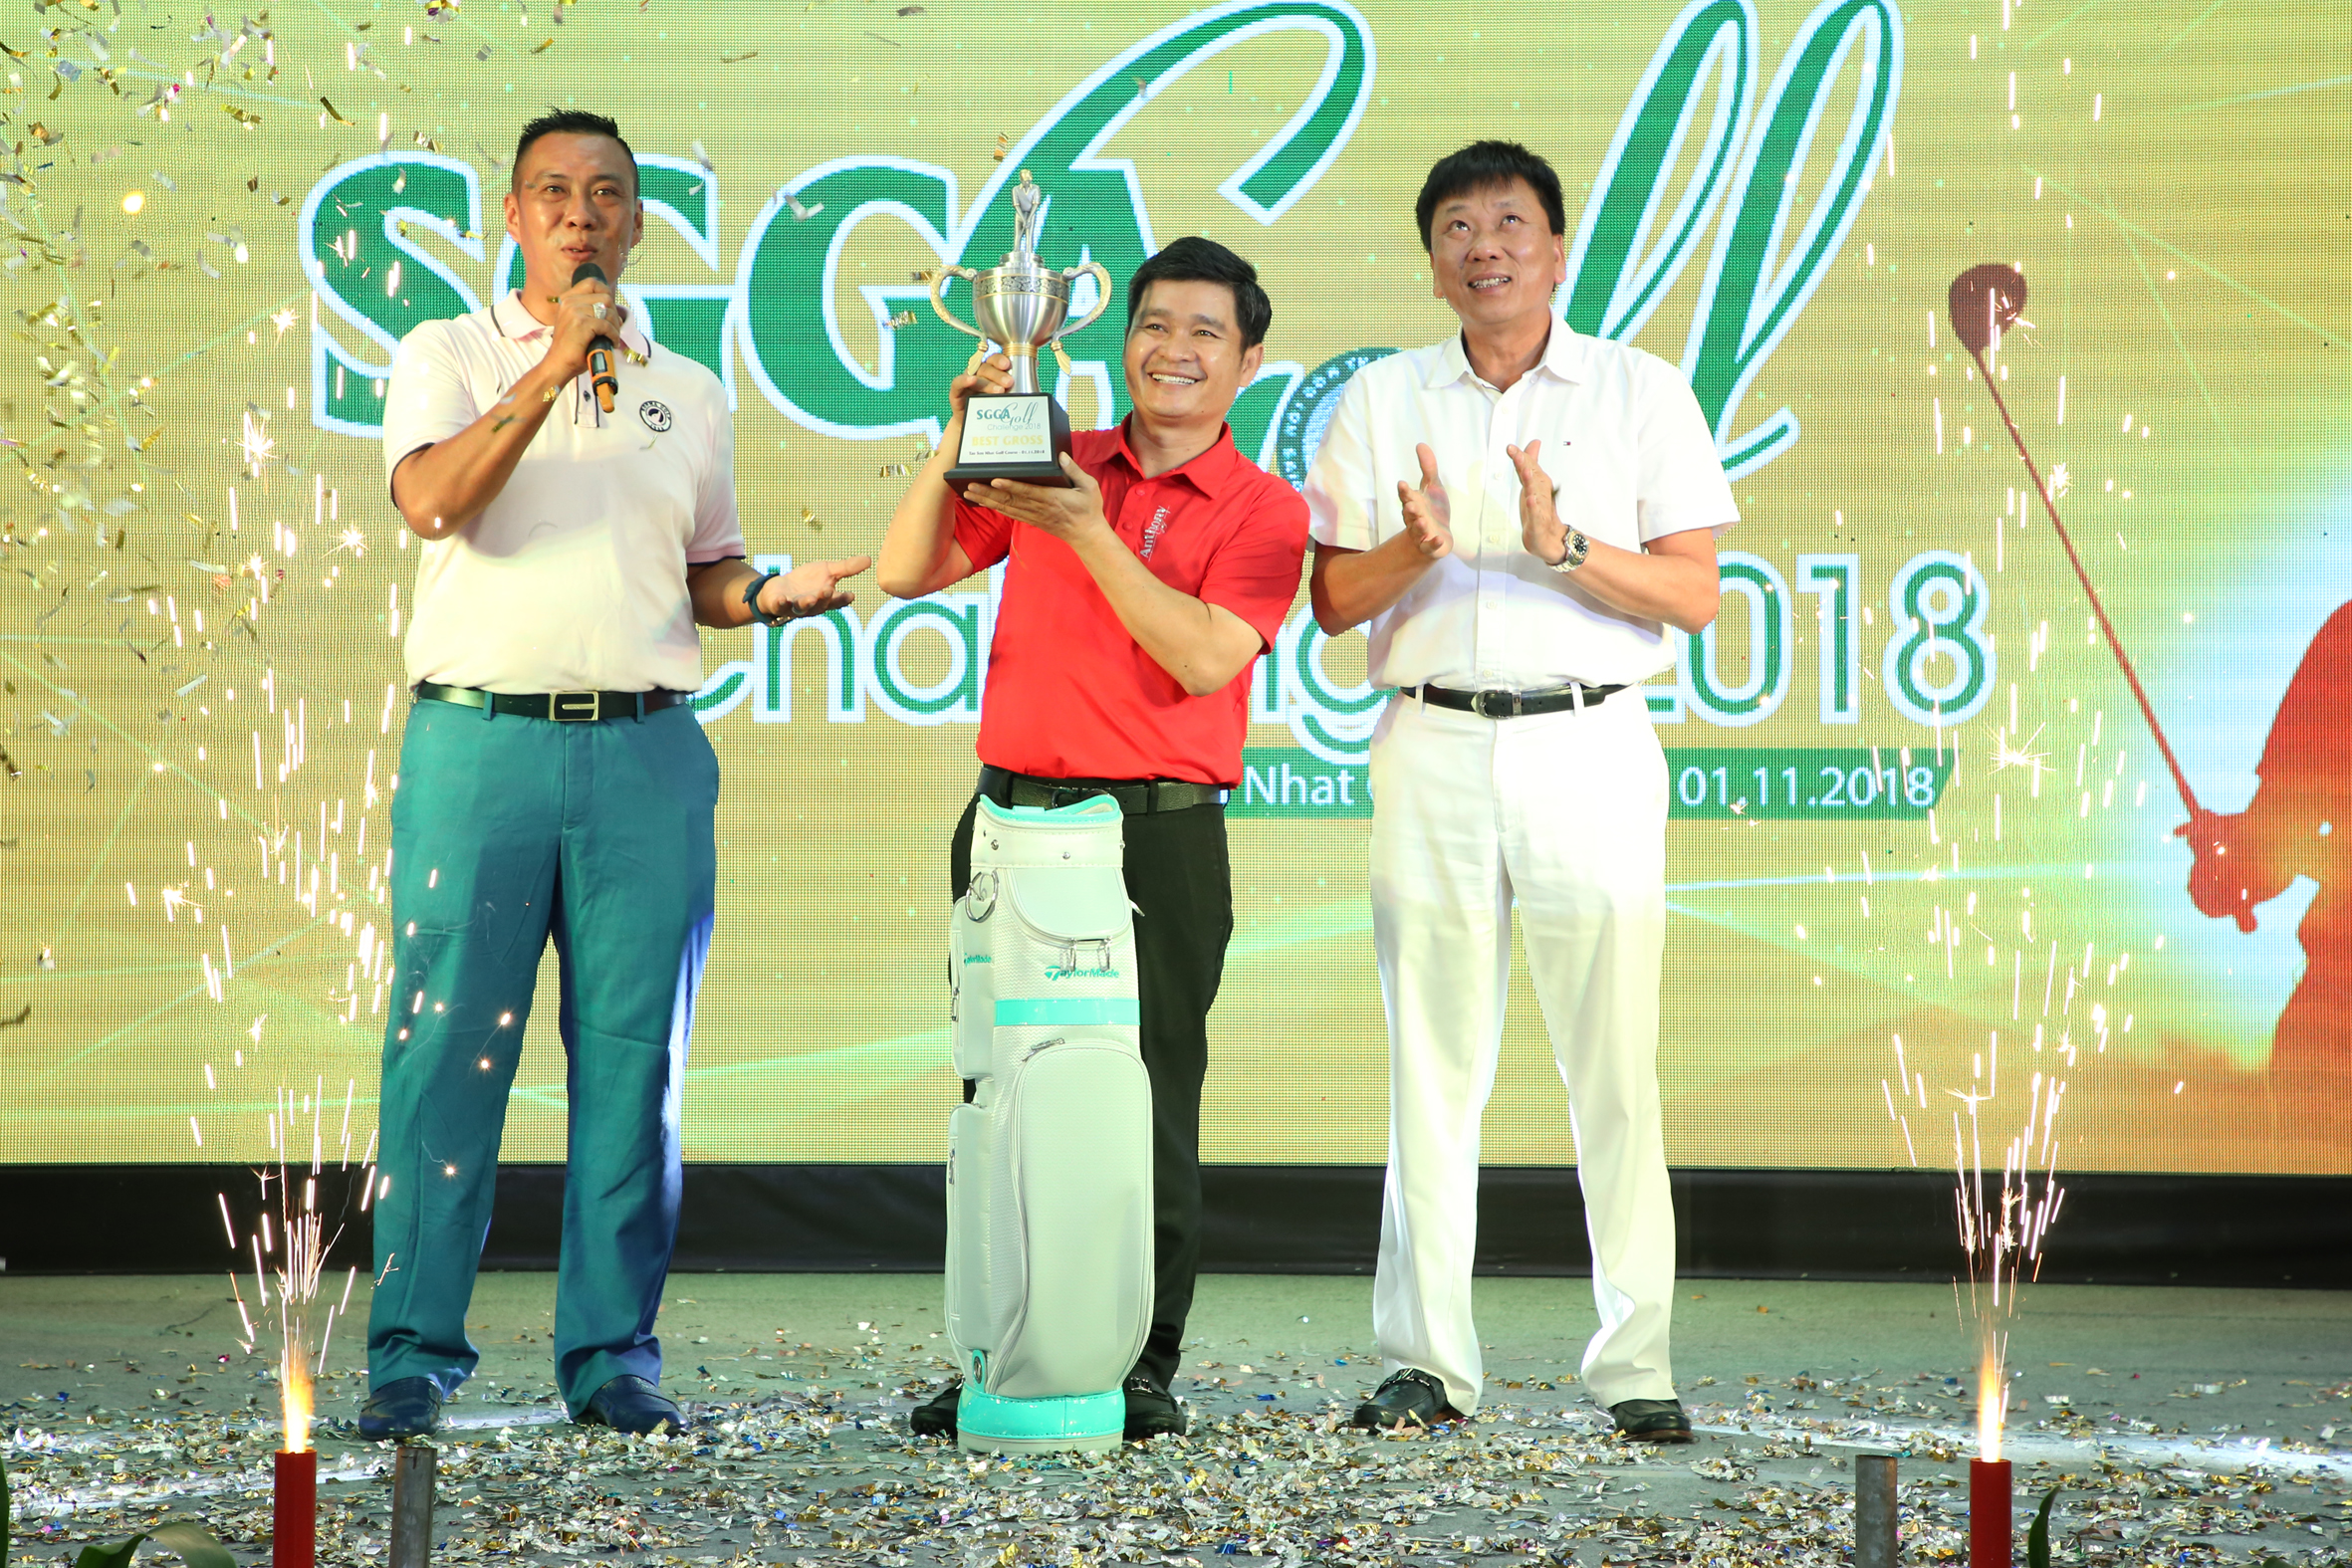 Vinh quang tại SGGA Golf Challenge 2018 gọi tên golfer Nguyễn Văn Thống